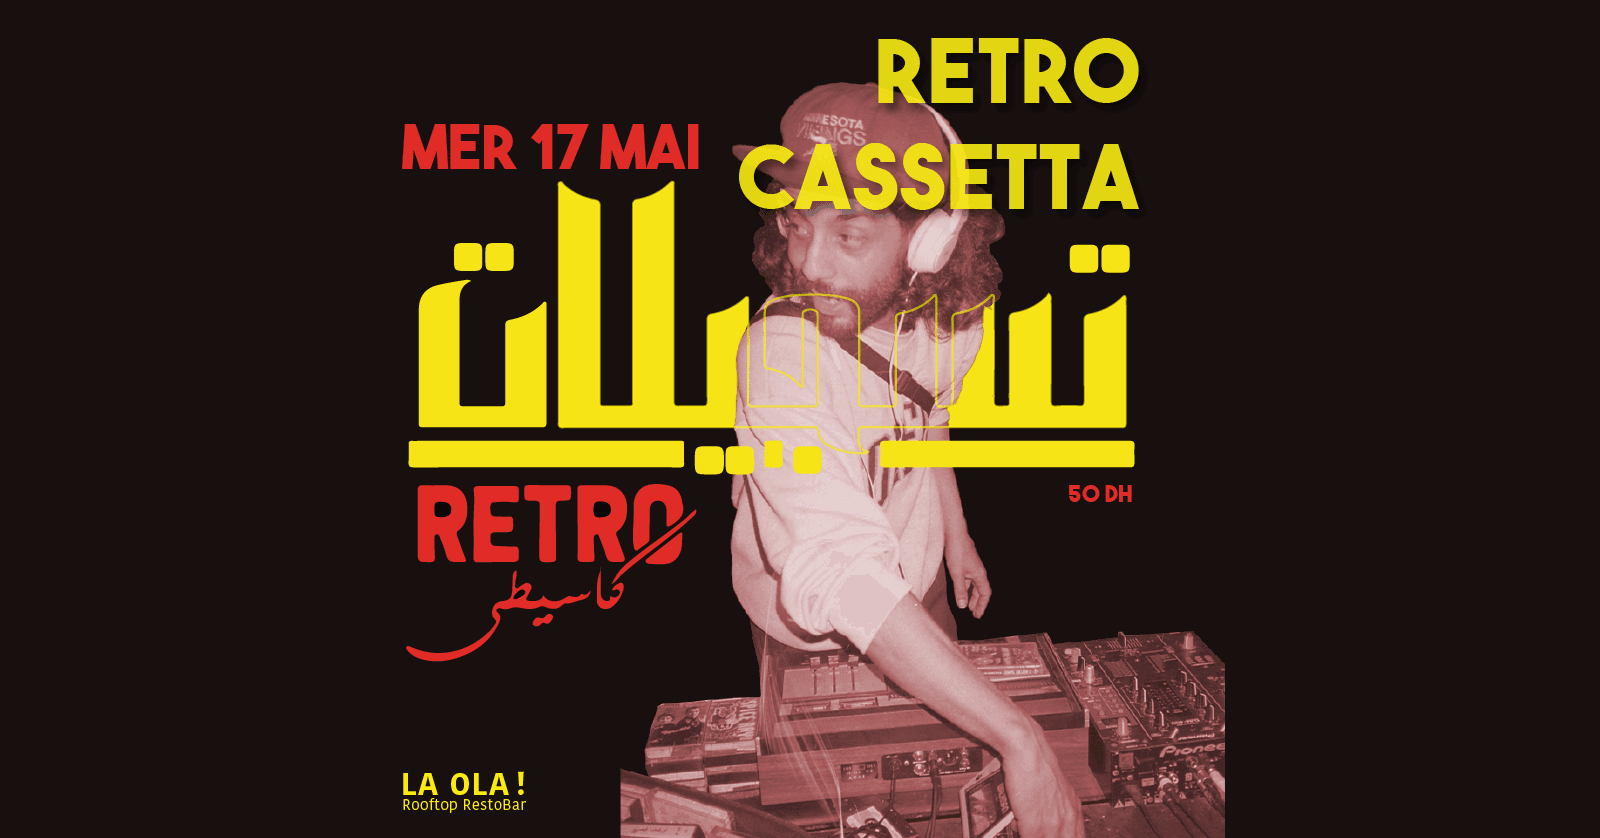 La Ola invites Retro Cassetta